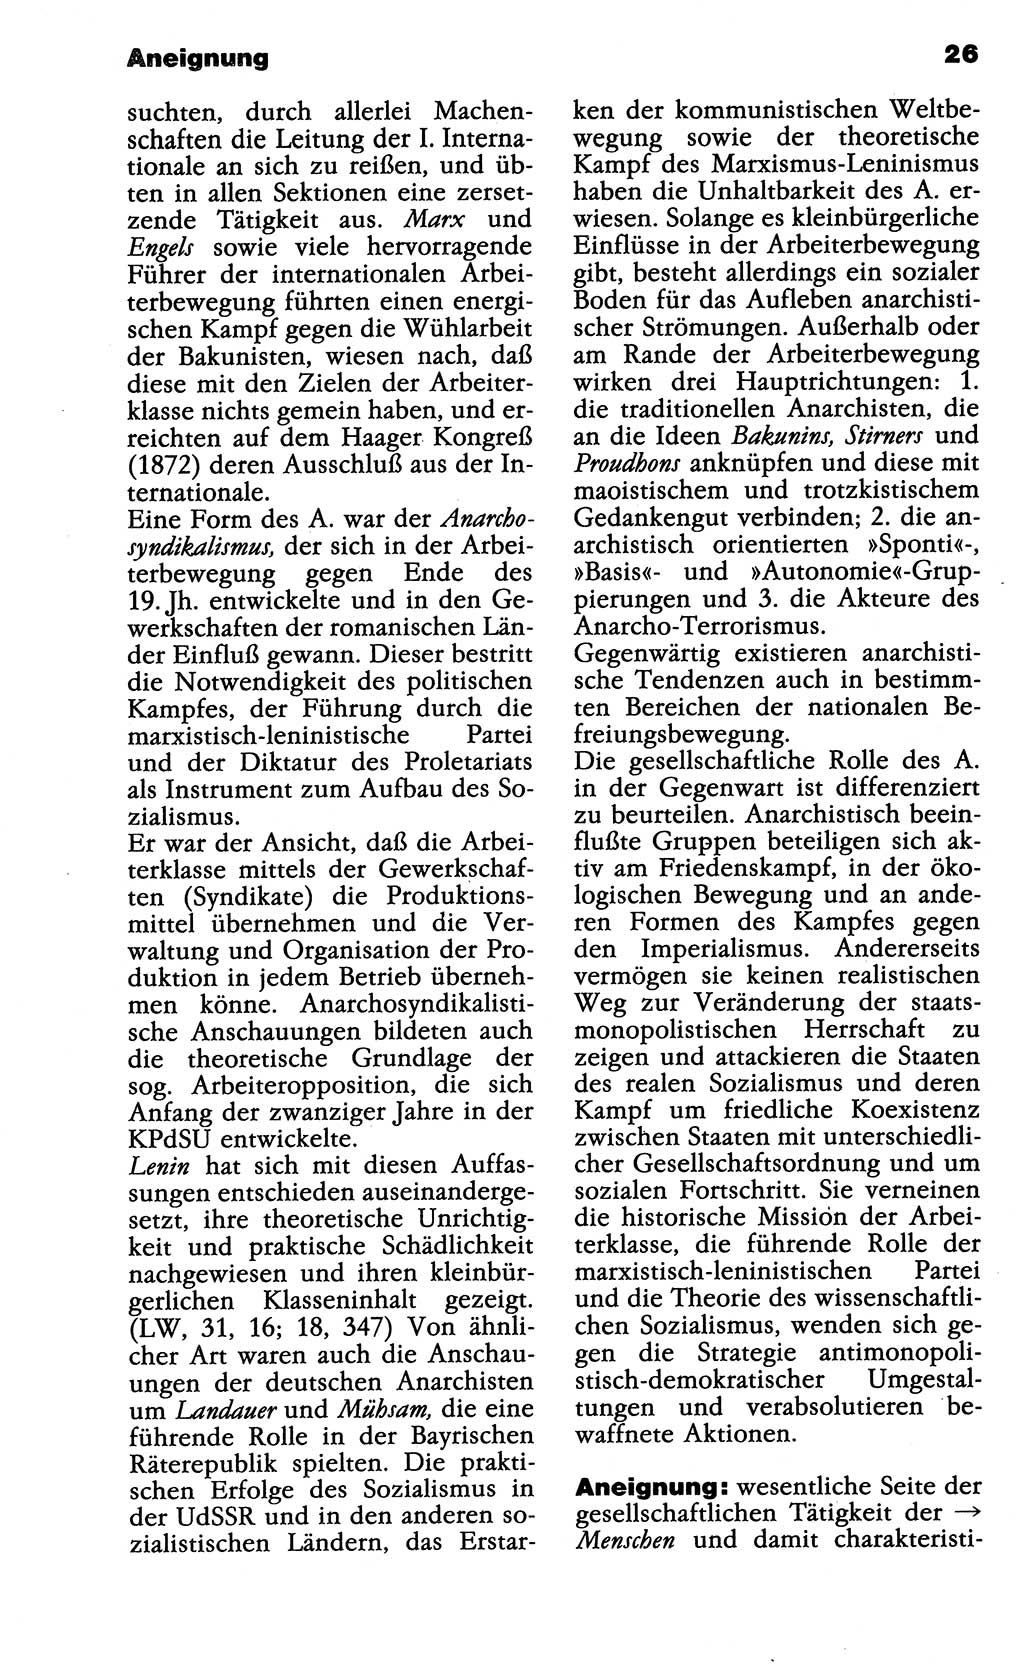 Wörterbuch der marxistisch-leninistischen Philosophie [Deutsche Demokratische Republik (DDR)] 1985, Seite 26 (Wb. ML Phil. DDR 1985, S. 26)